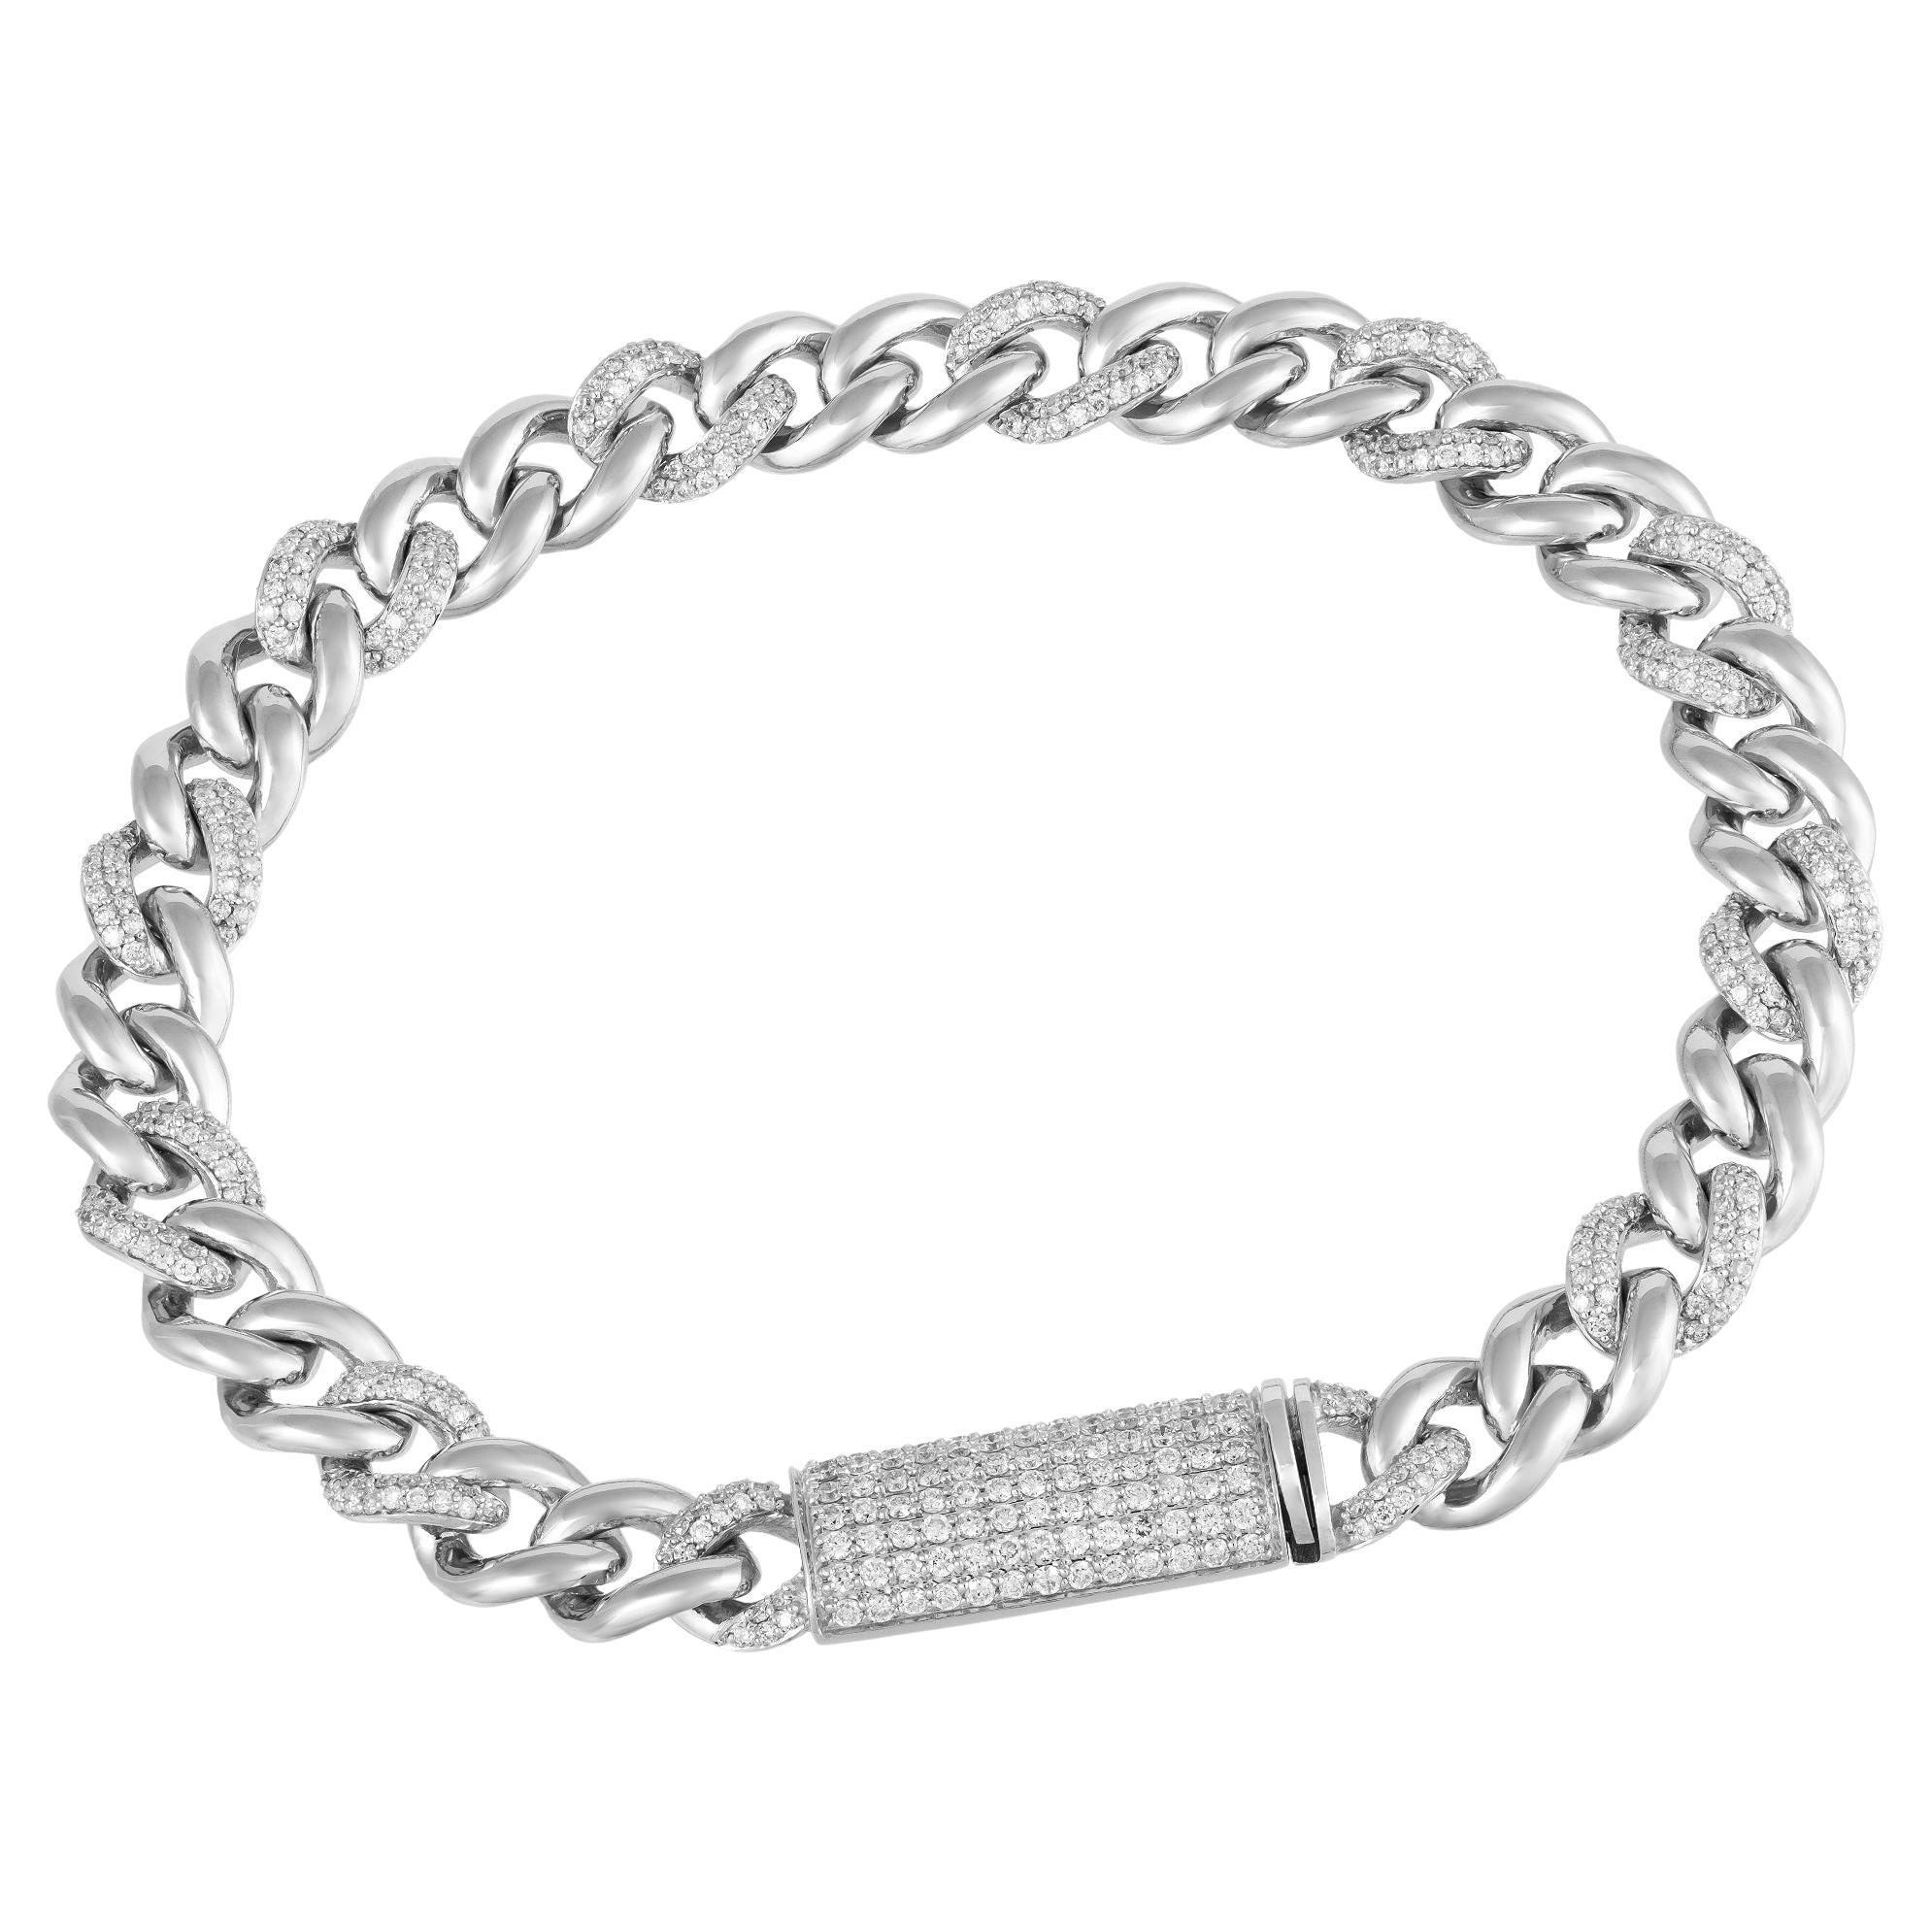 Chain White Gold 18K Bracelet Diamond for Her For Sale